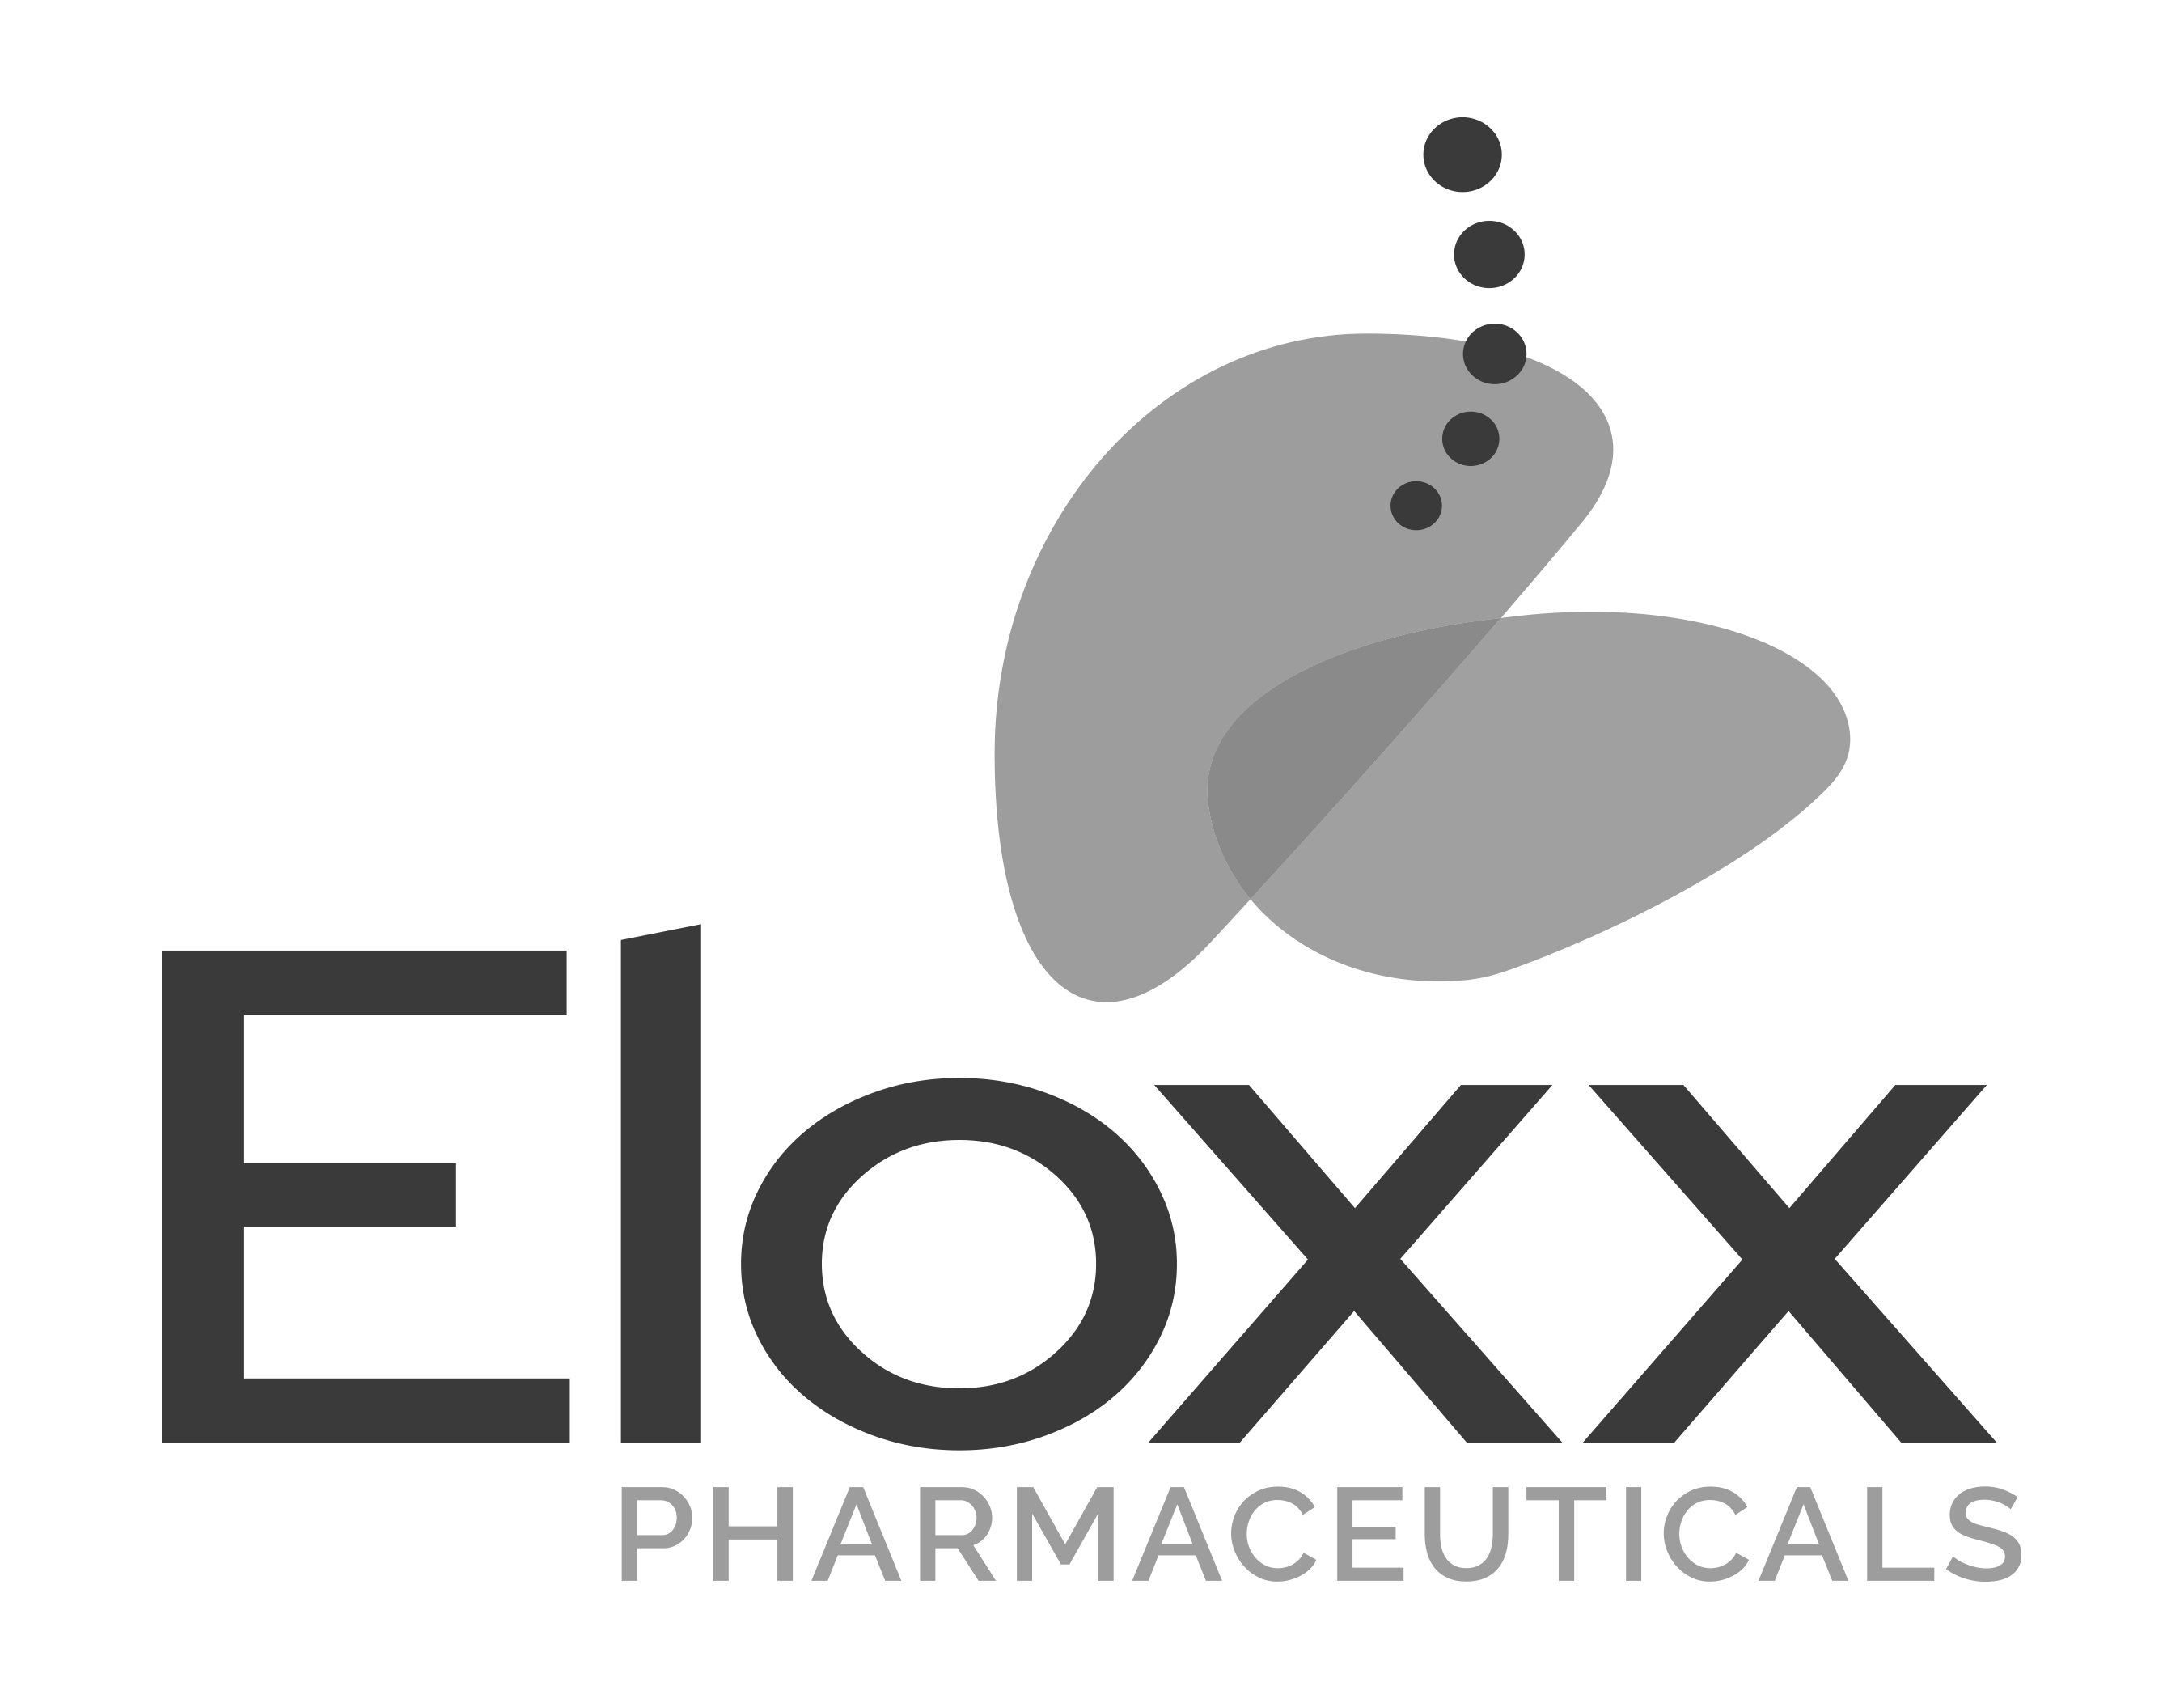 ELOXX